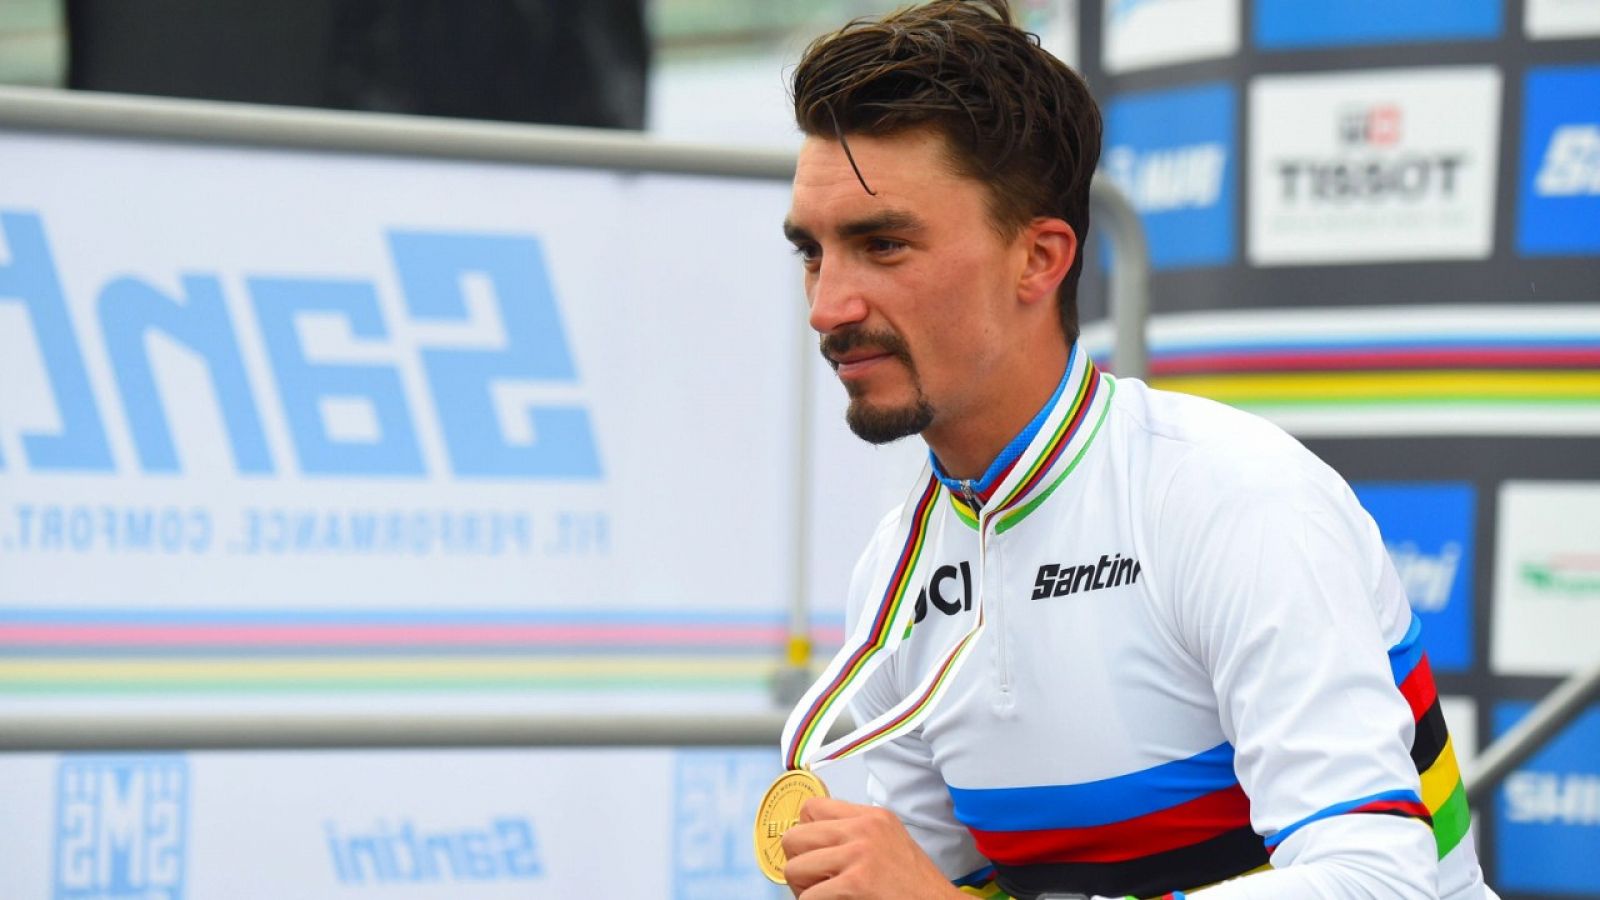 El ciclista francés Julian Alaphilippe posa con la medalla de oro de campeón del mundo en Imola en 2020.